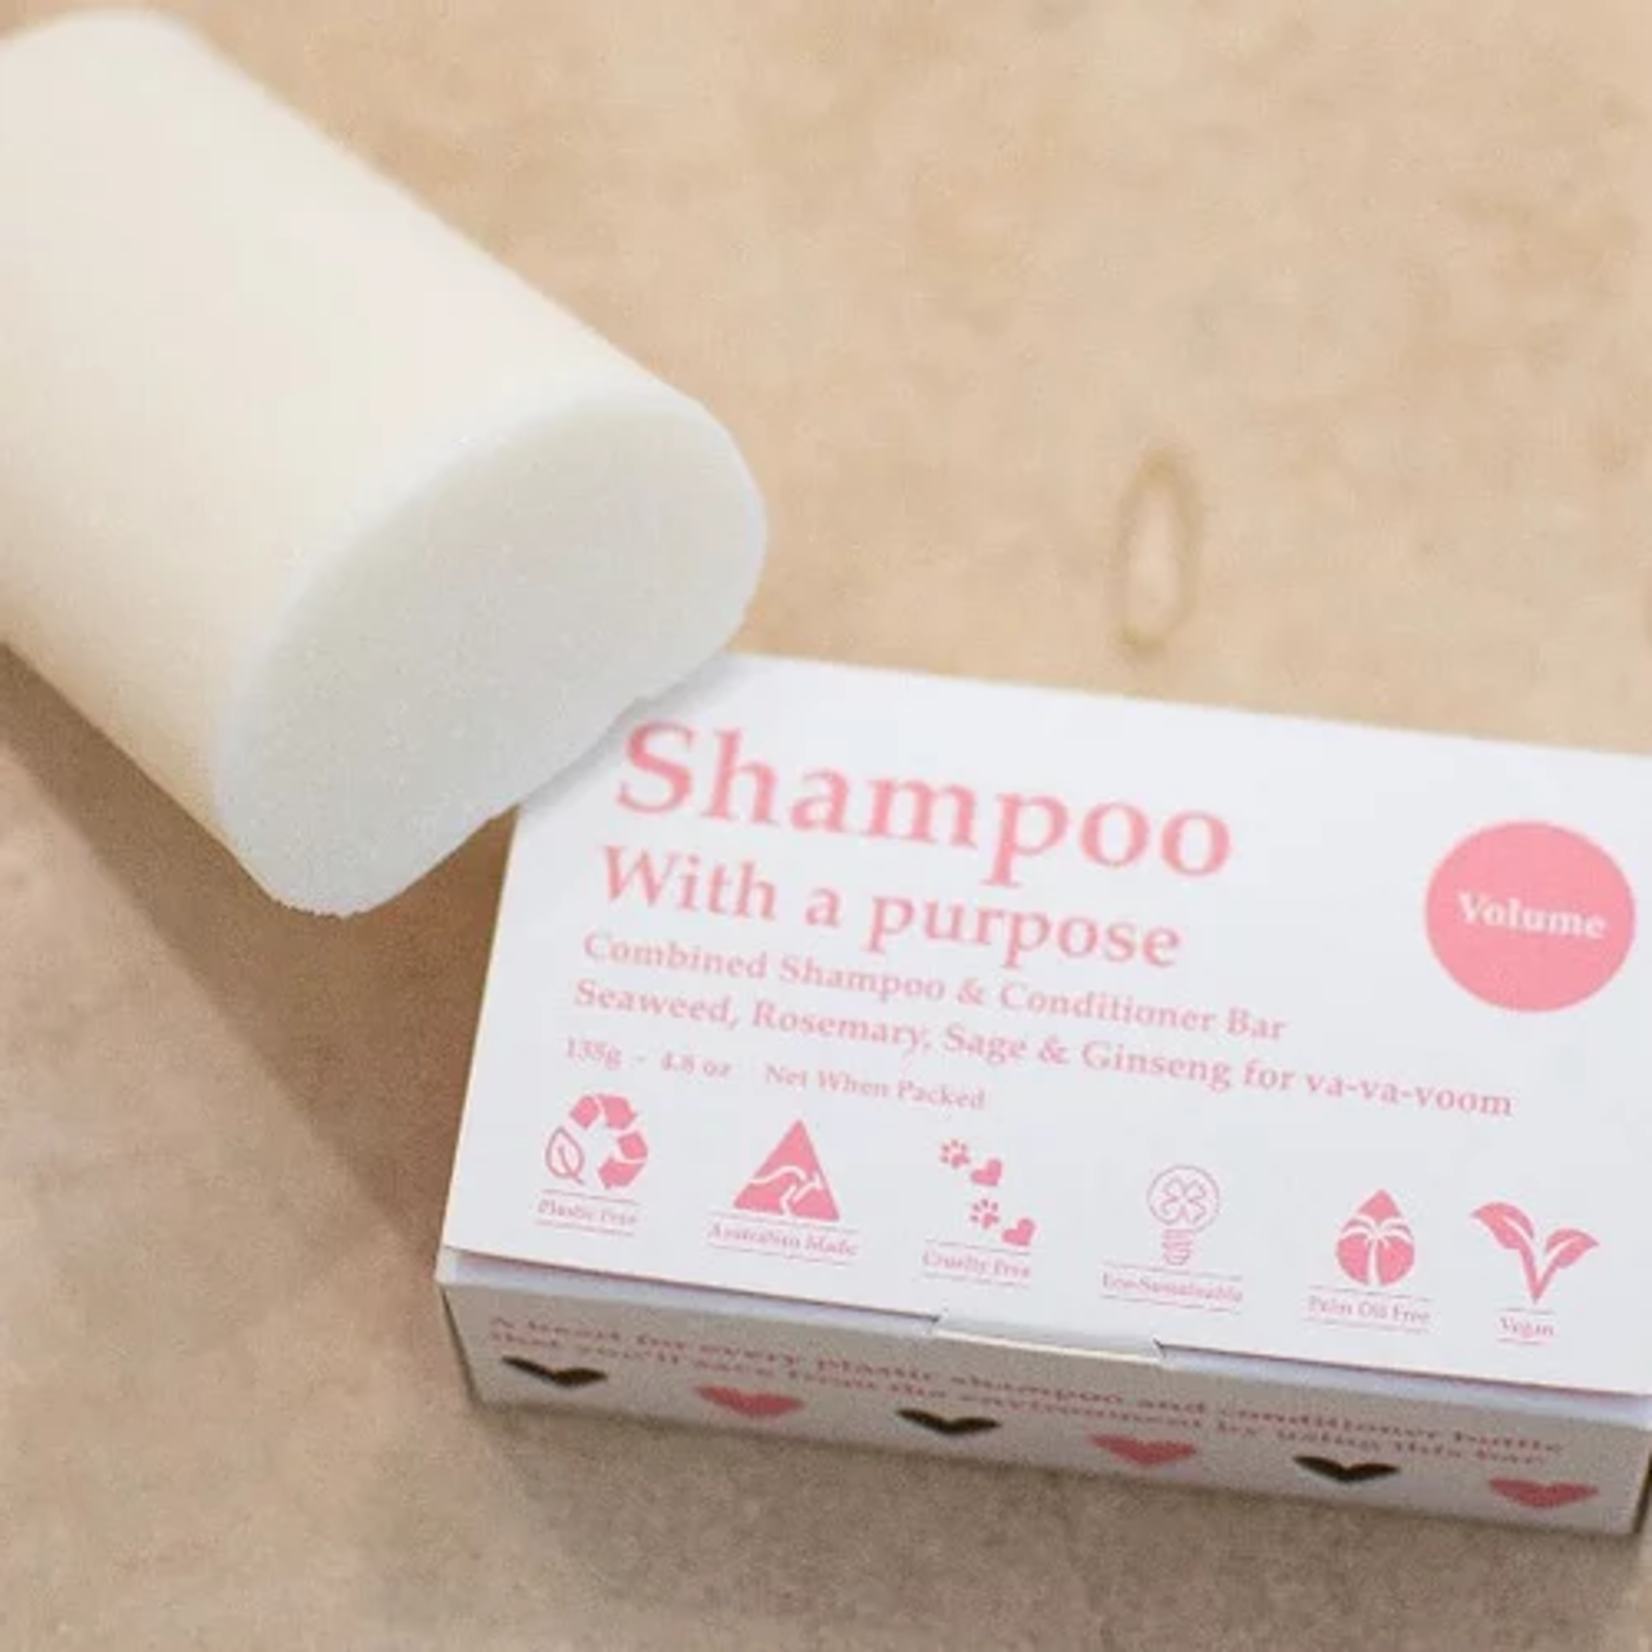 Shampoo With a Purpose Shampoo With A Purpose - Volume